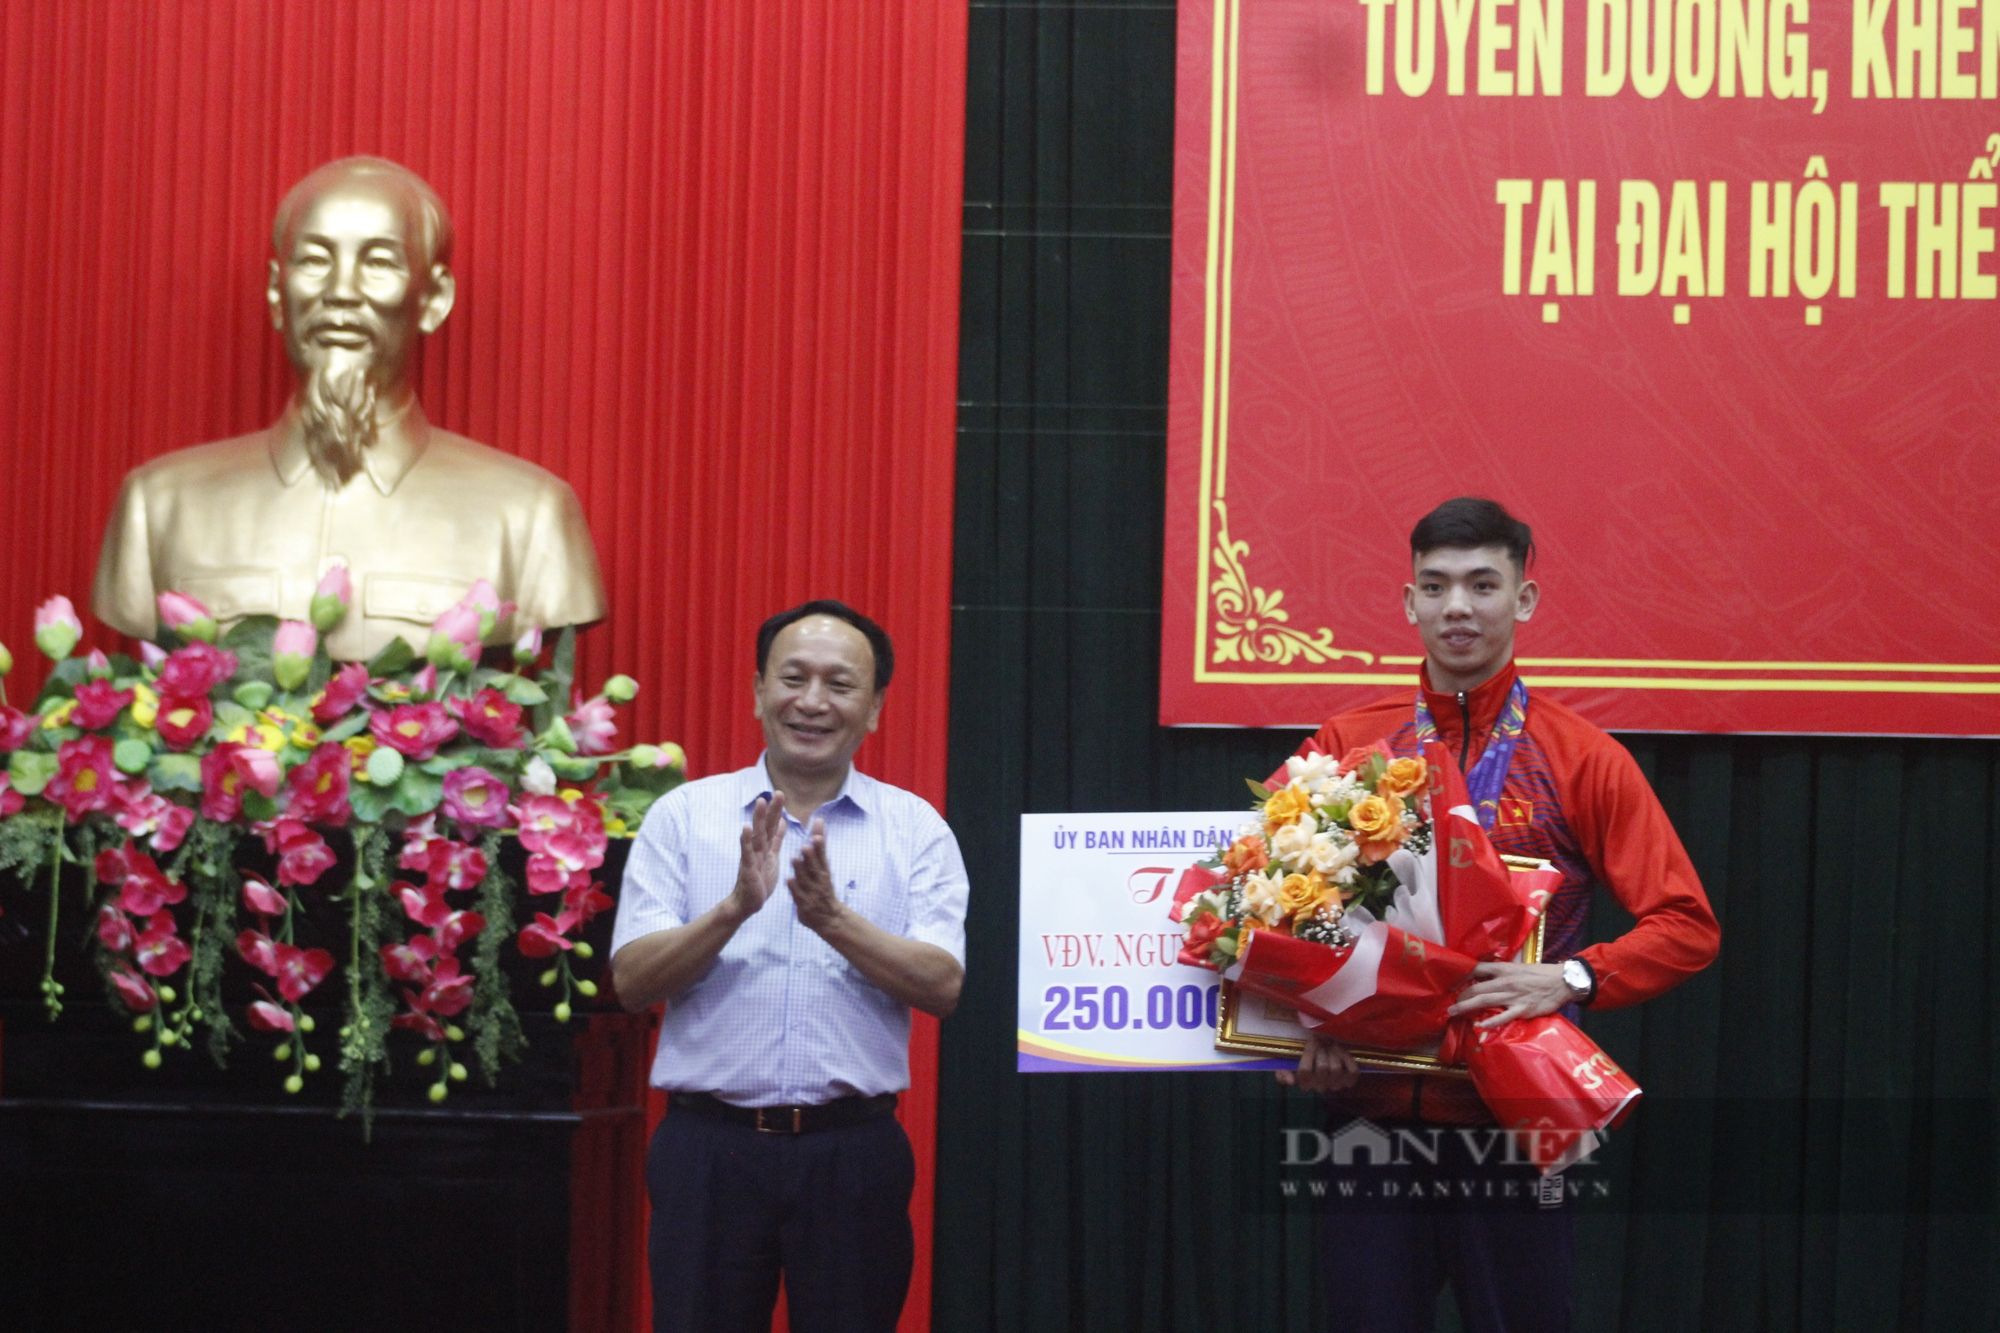 Trở về từ SEA Games 31, kình ngư Nguyễn Huy Hoàng cùng nhiều VĐV ở Quảng Bình nhận thưởng khủng - Ảnh 1.